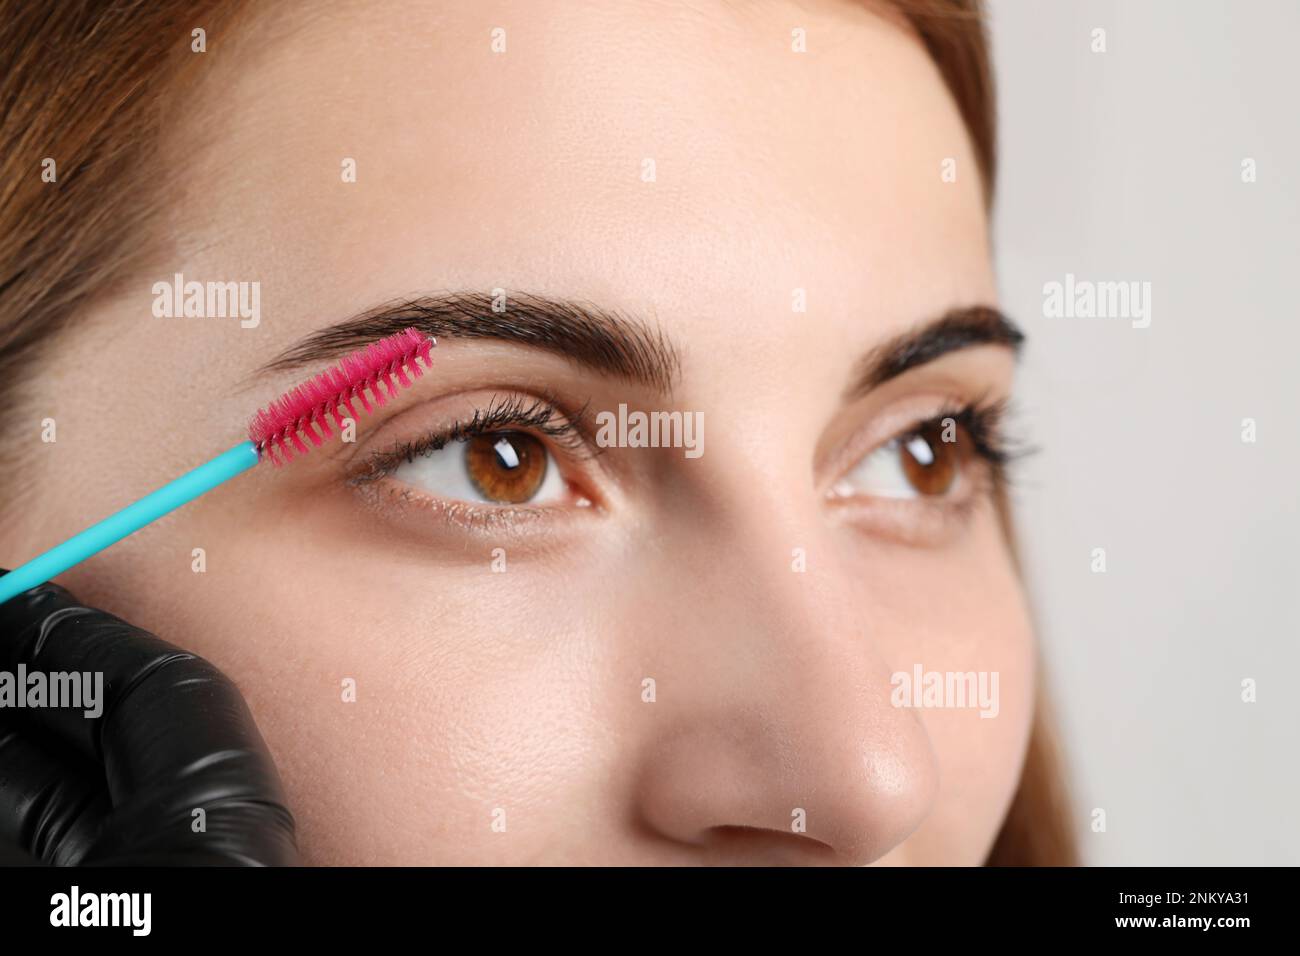 Kosmetikerin putzt die Augenbrauen einer Frau, nachdem sie auf grauem Hintergrund getönt wurde, Nahaufnahme Stockfoto